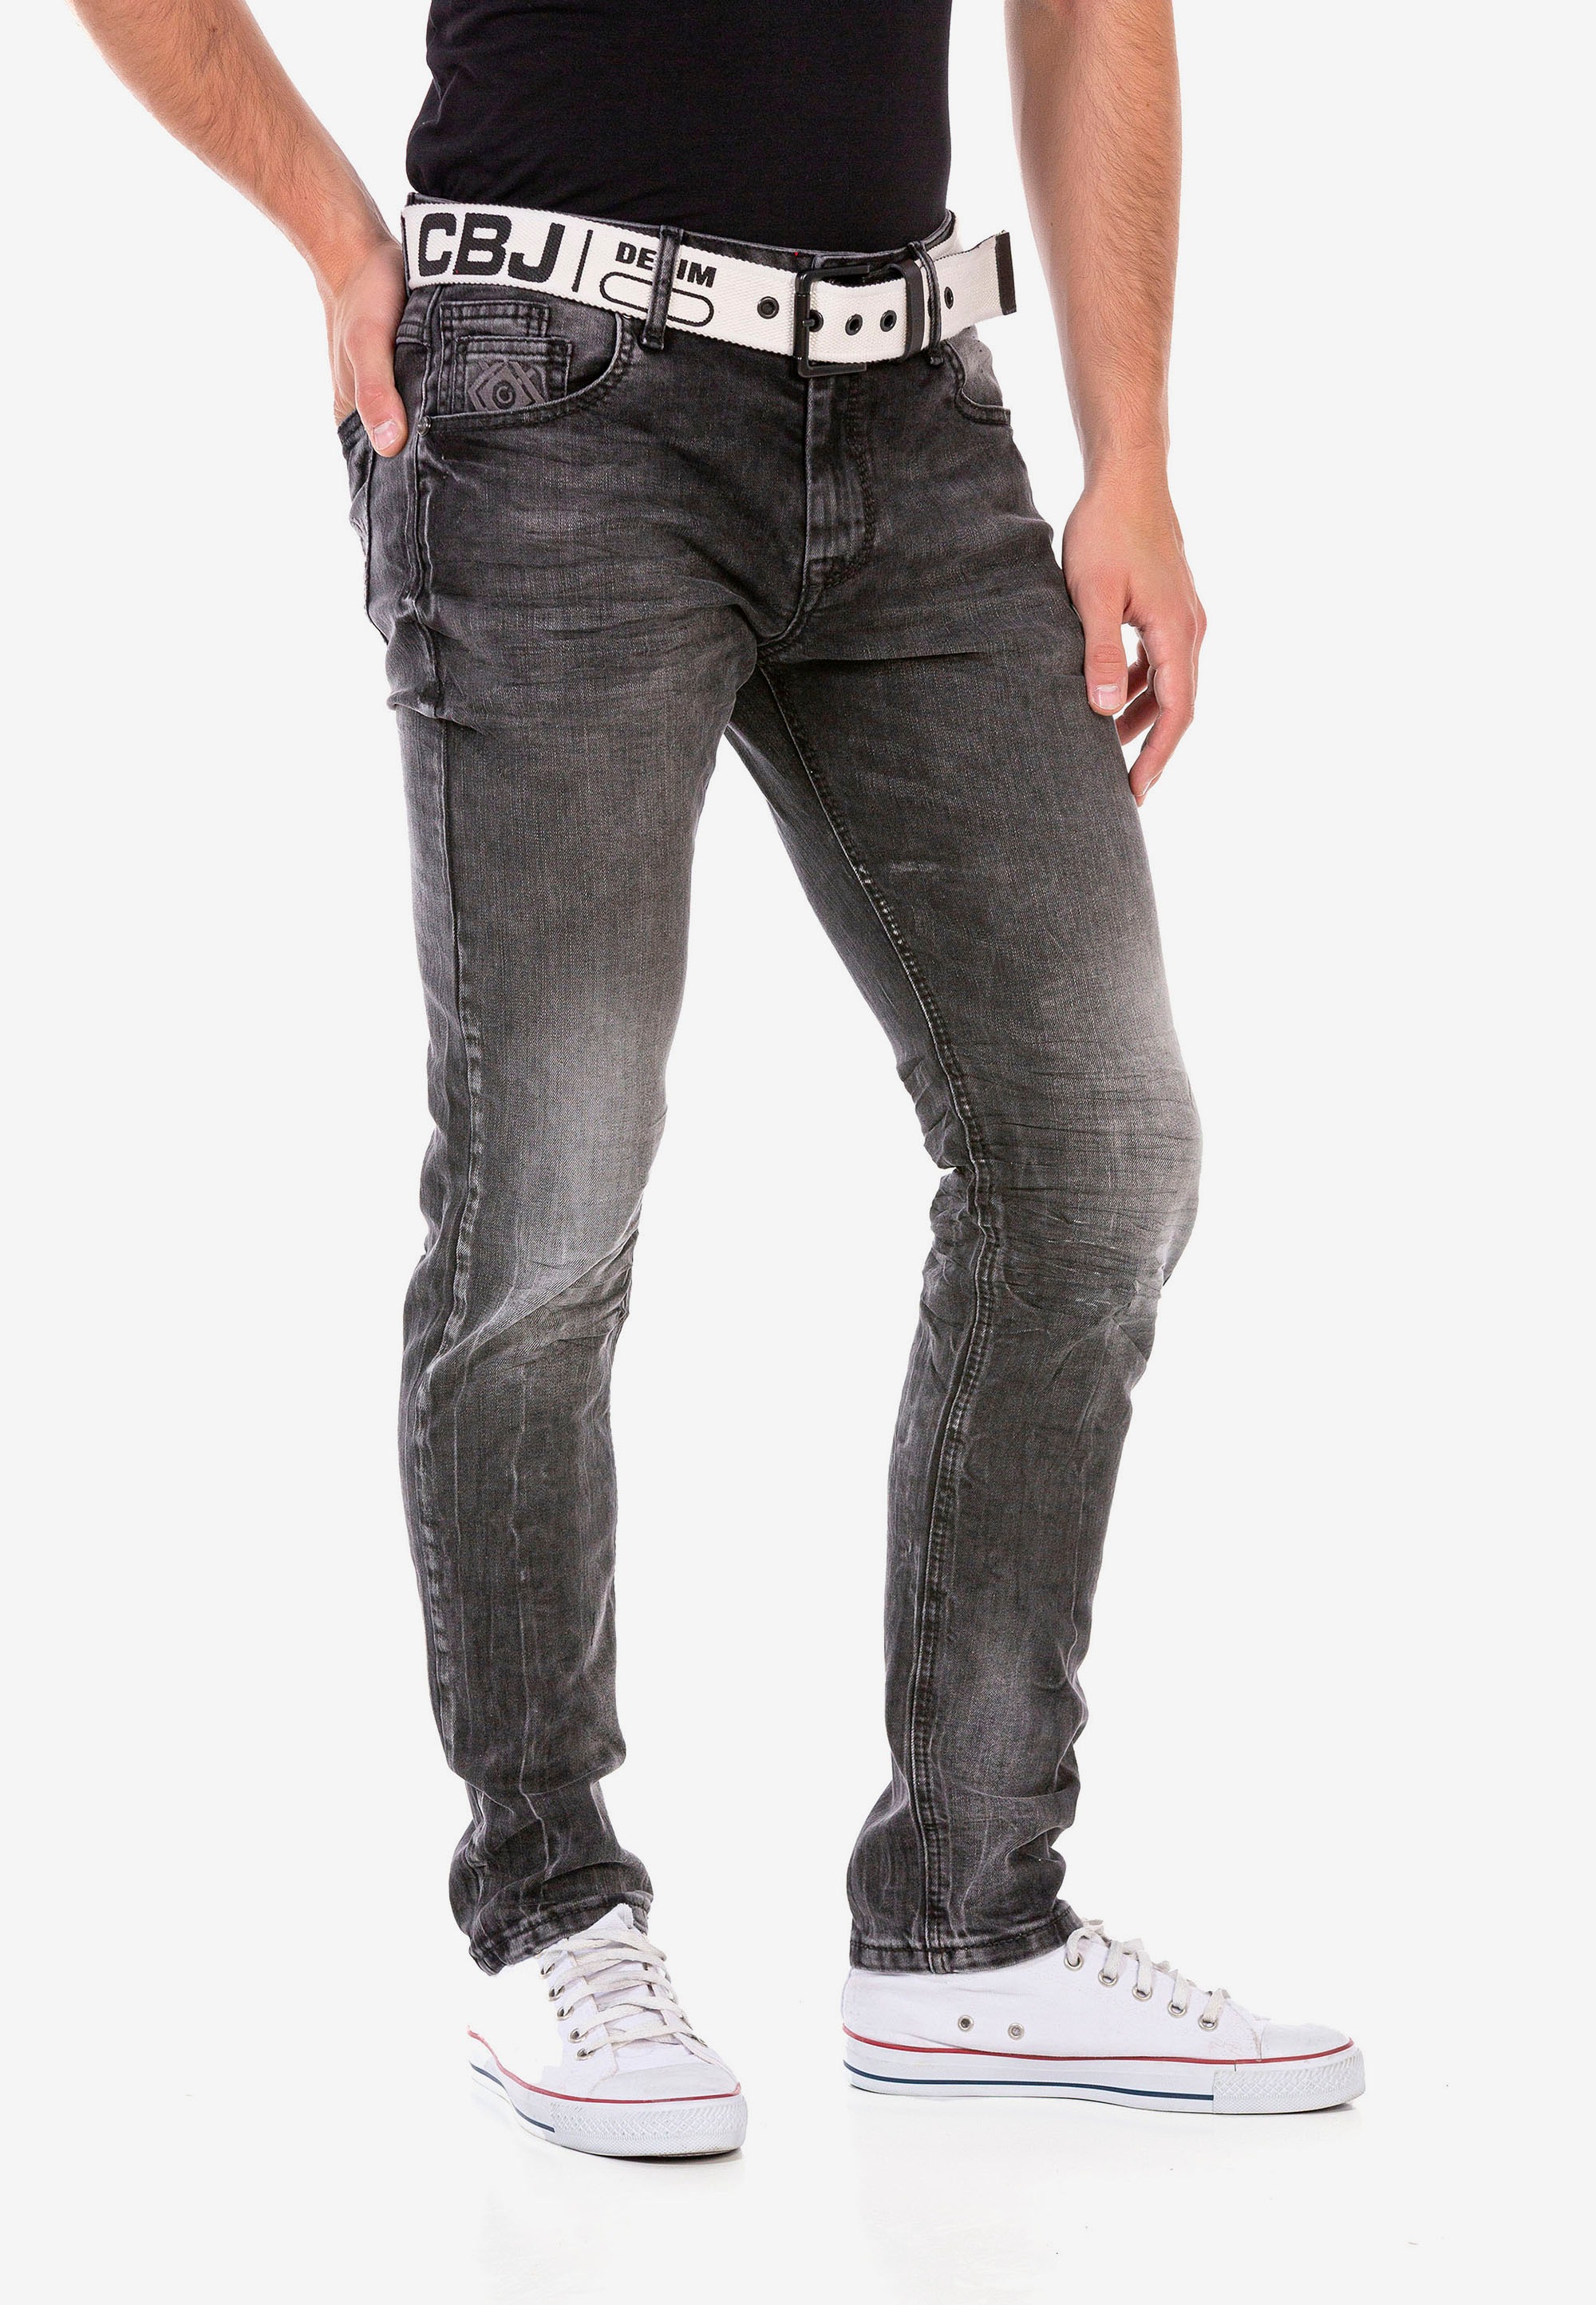 Cipo & Baxx Straight-Jeans, im klassischen 5-Pocket-Stil